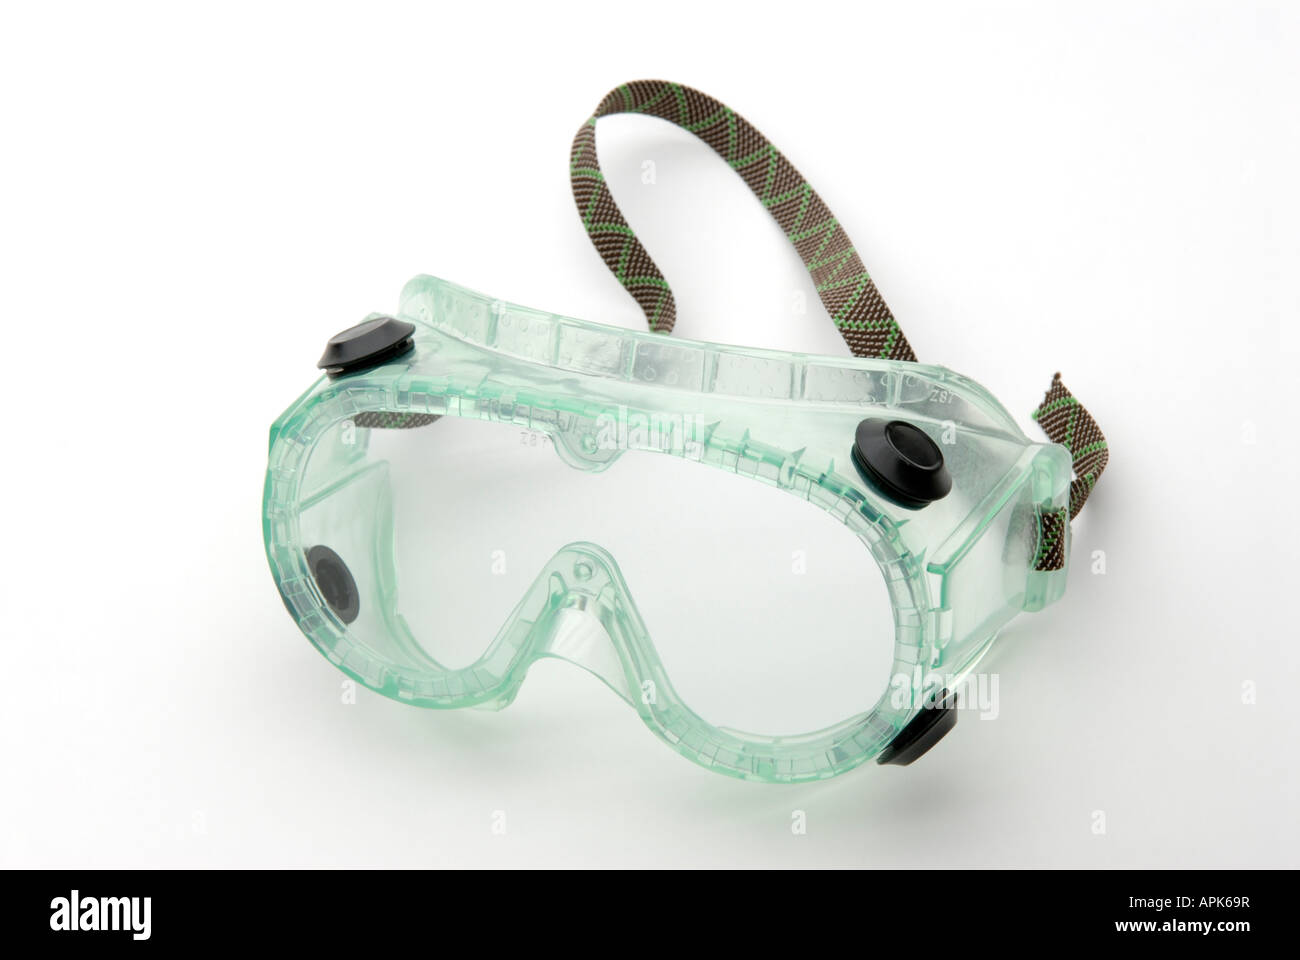 A prova di spruzzi chimici gli occhiali di sicurezza per l'uso in laboratori di ricerca e corsi di scienze Foto Stock